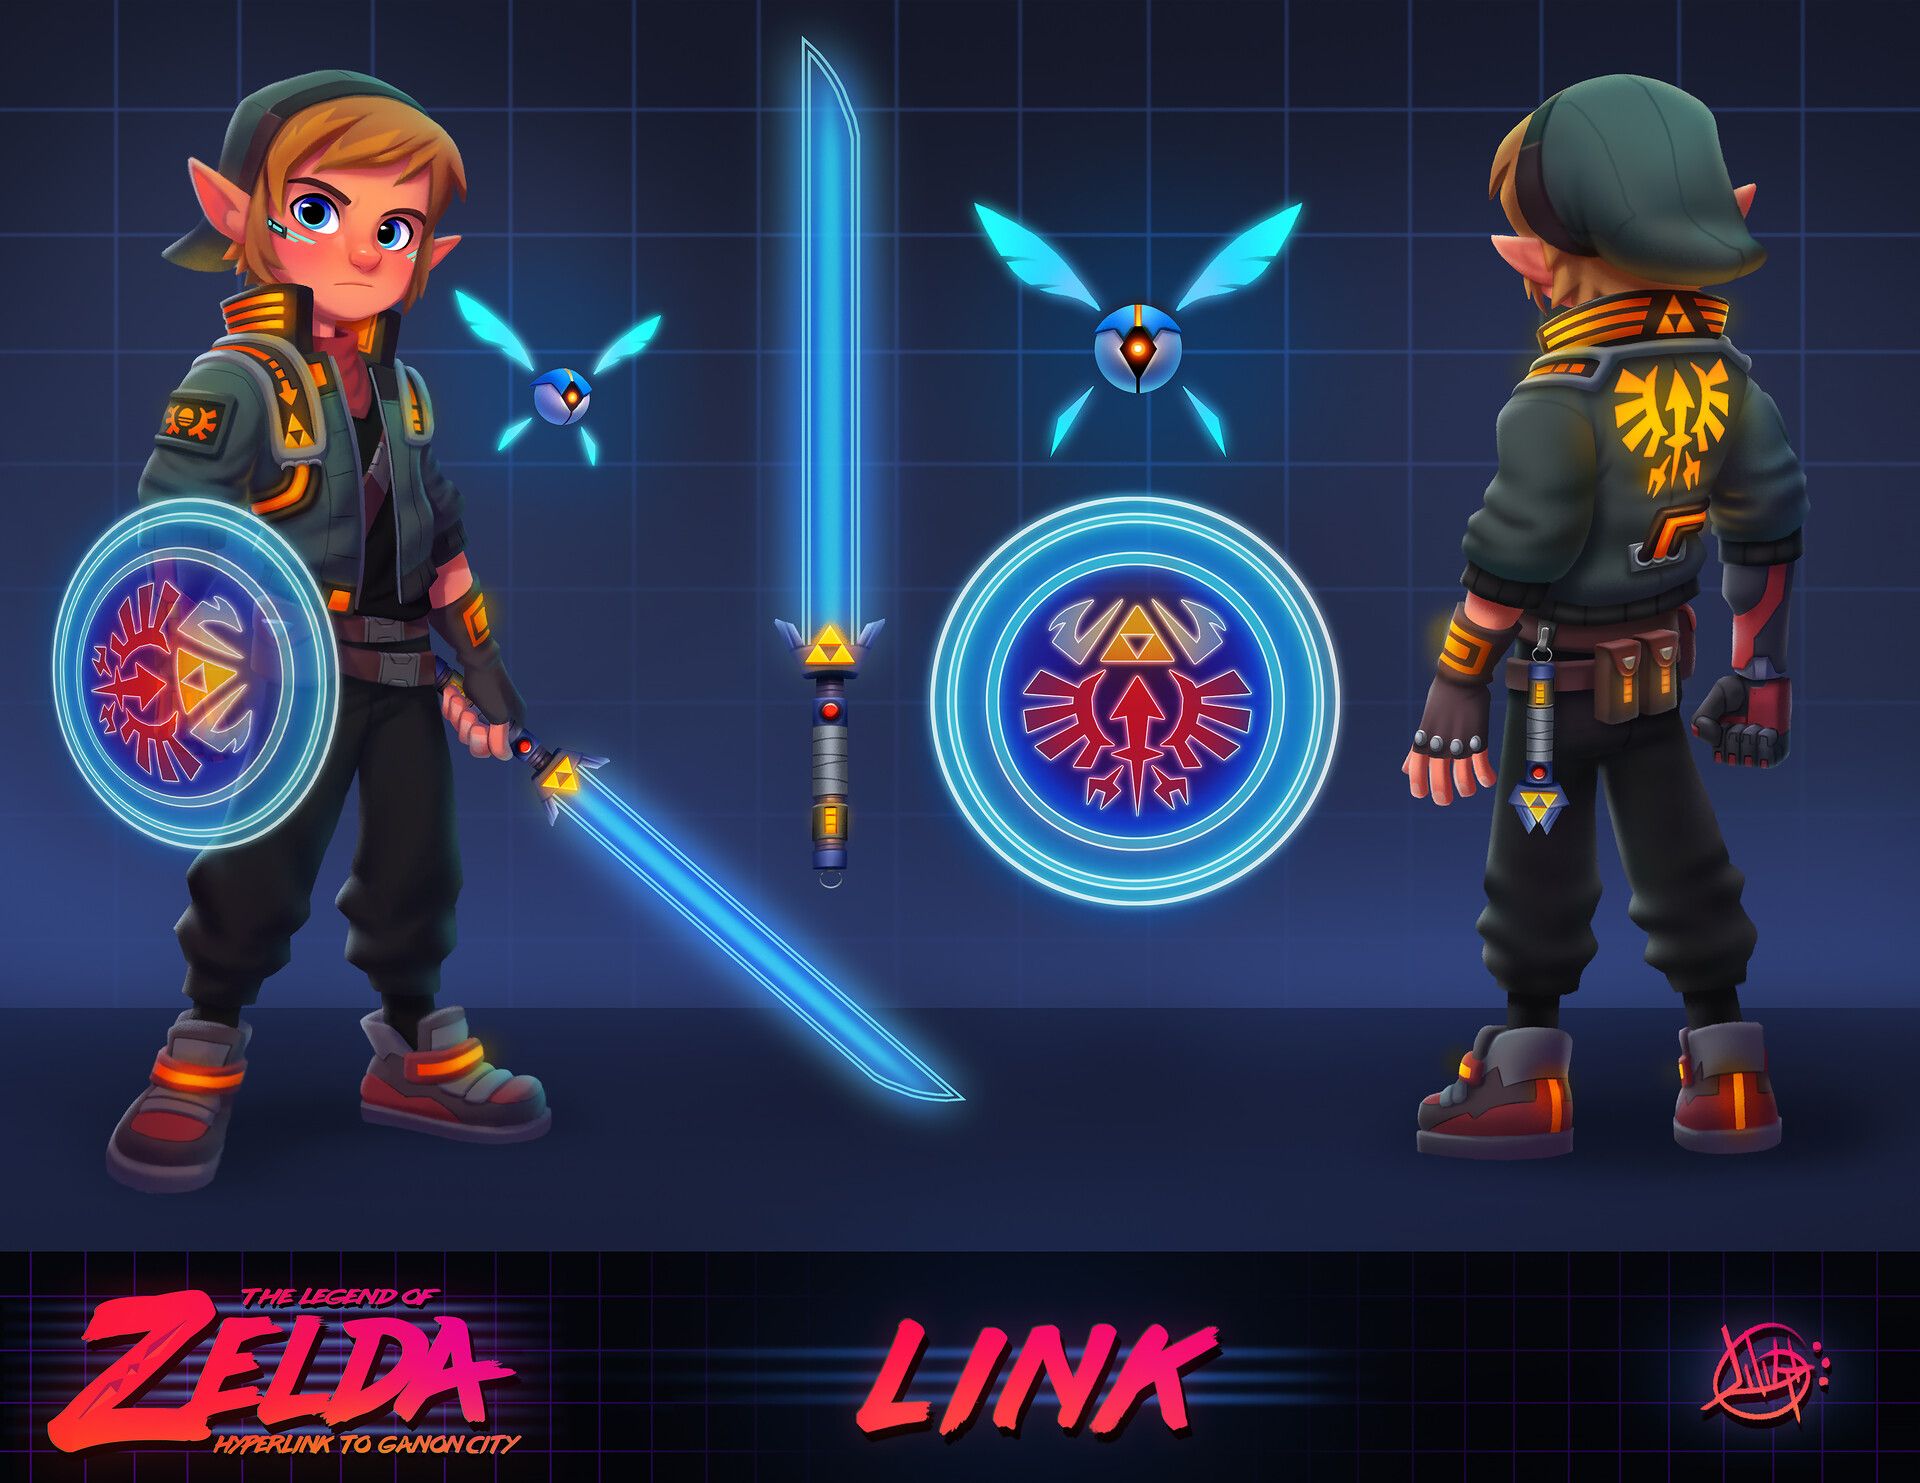 Cyberpunk fan art of Link